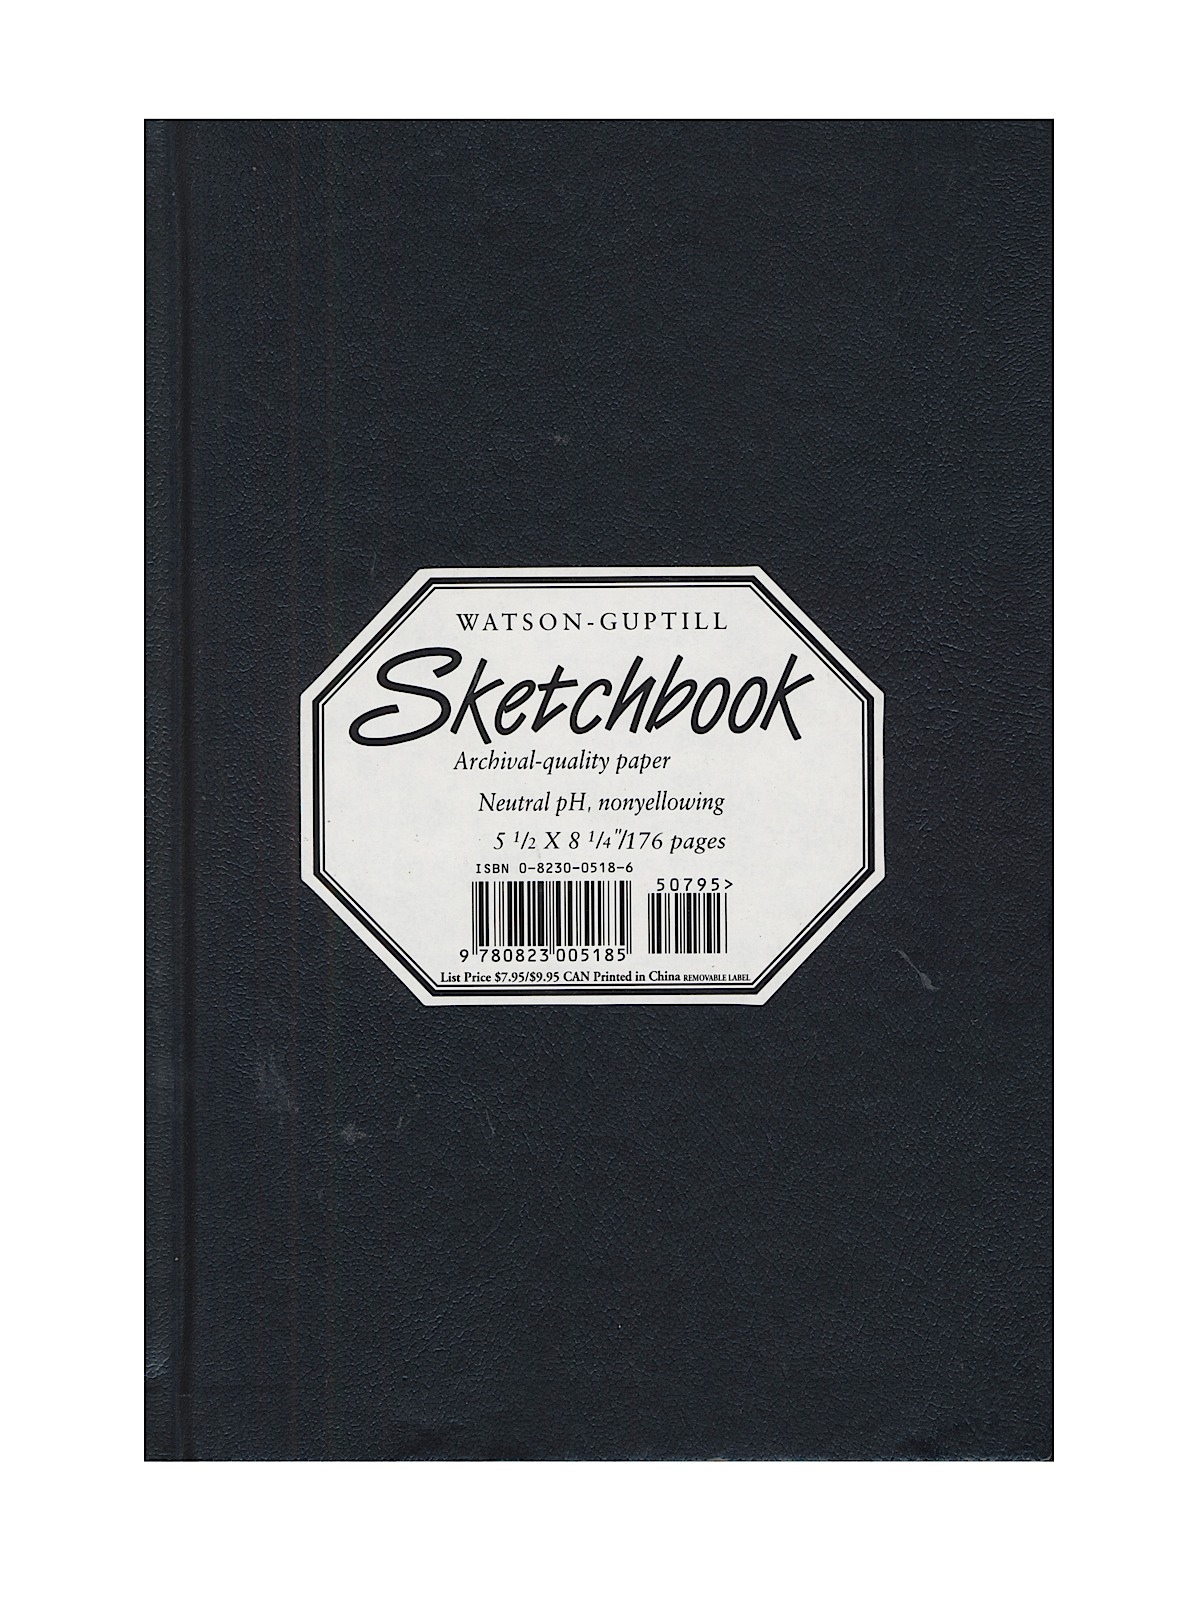 Hardcover Sketchbooks 5 1 2 In. X 8 1 4 In. Black